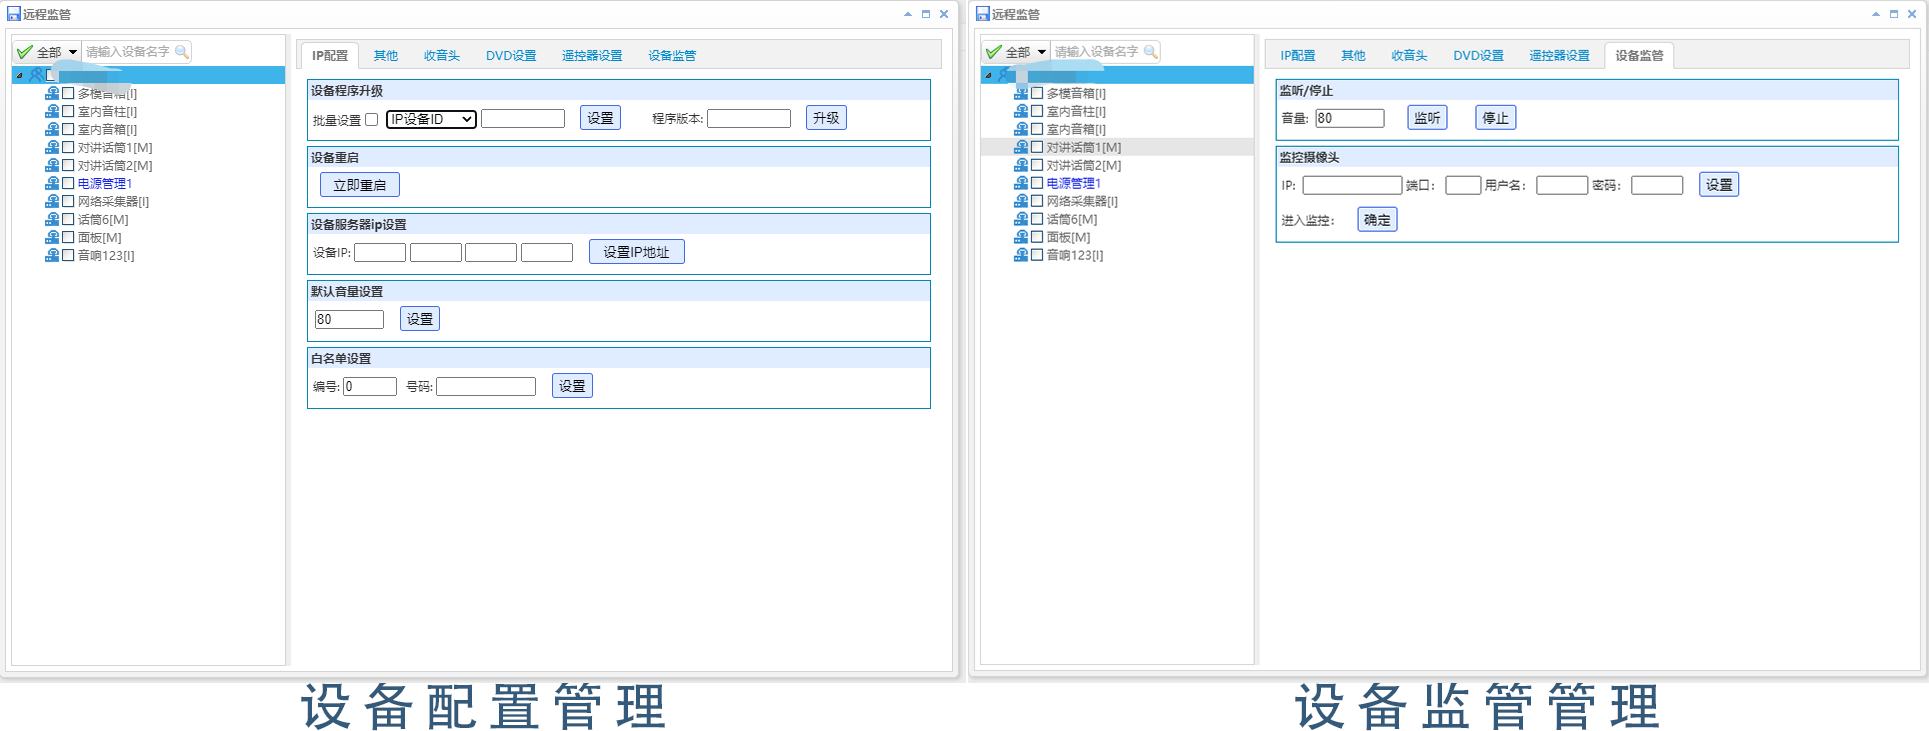 广州辉群IP数字网络广播平台管理软件之设备配置功能.png